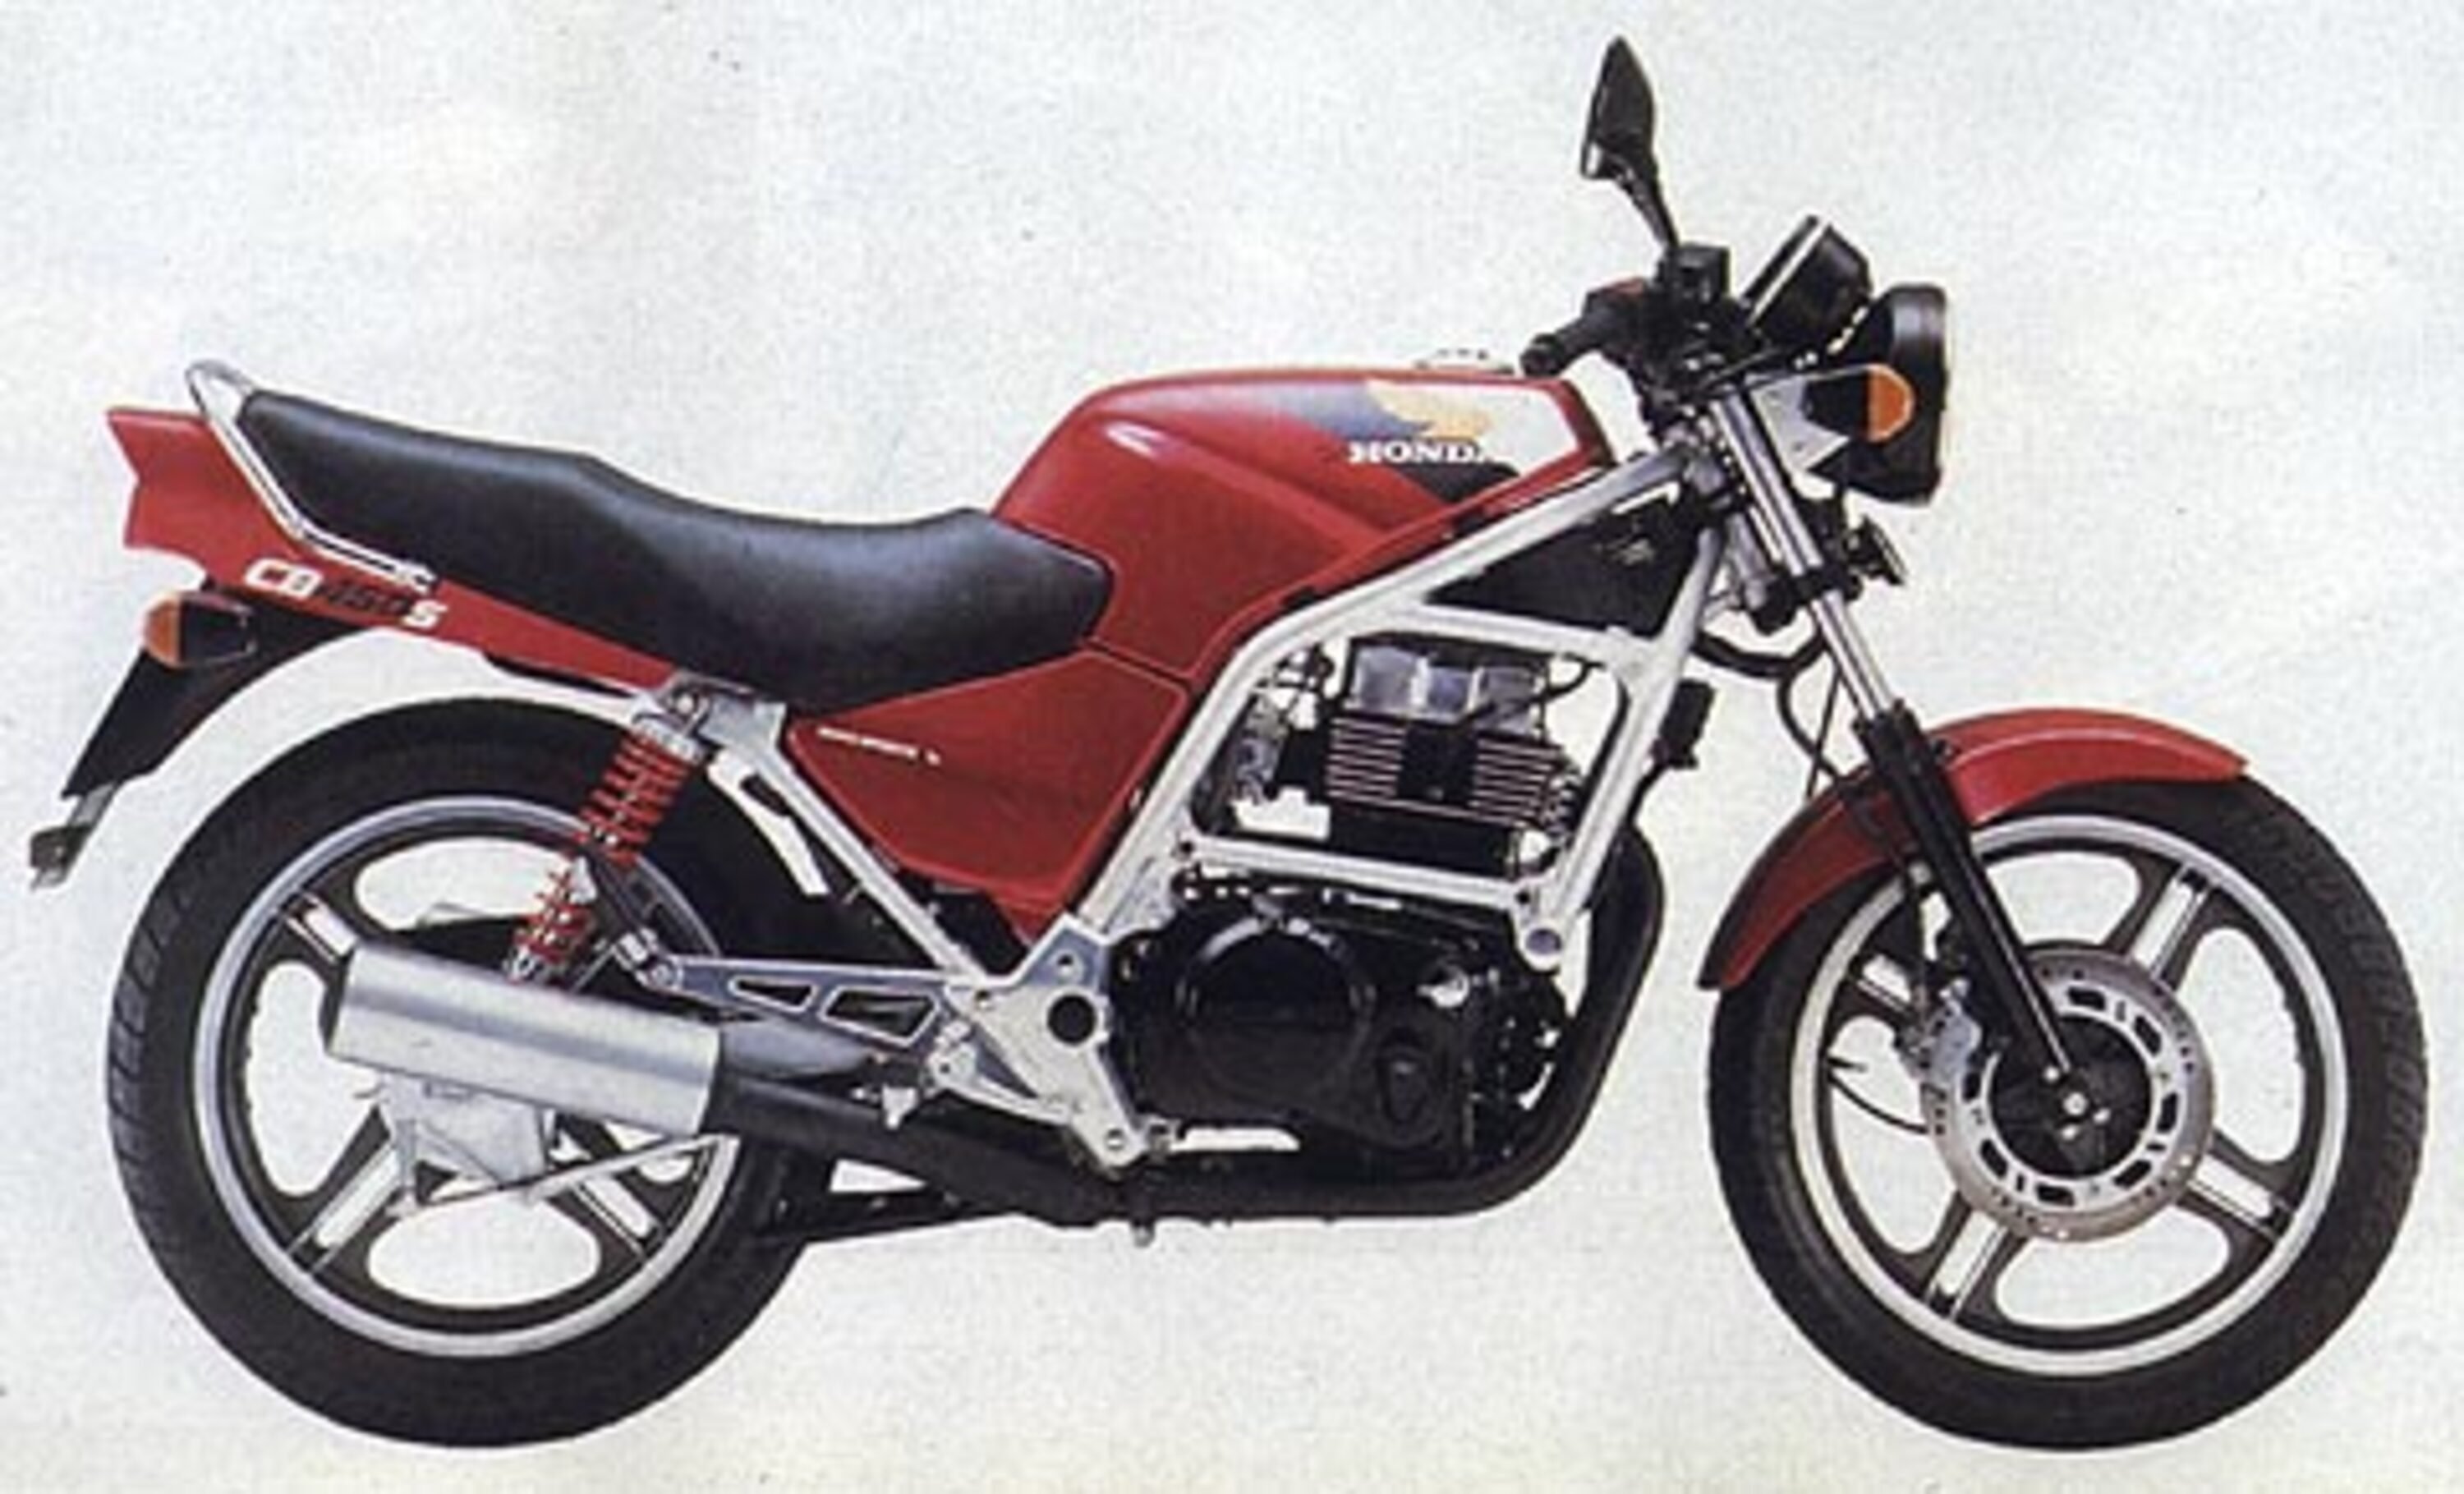 Honda CB 450 CB 450 S (1986 - 89)